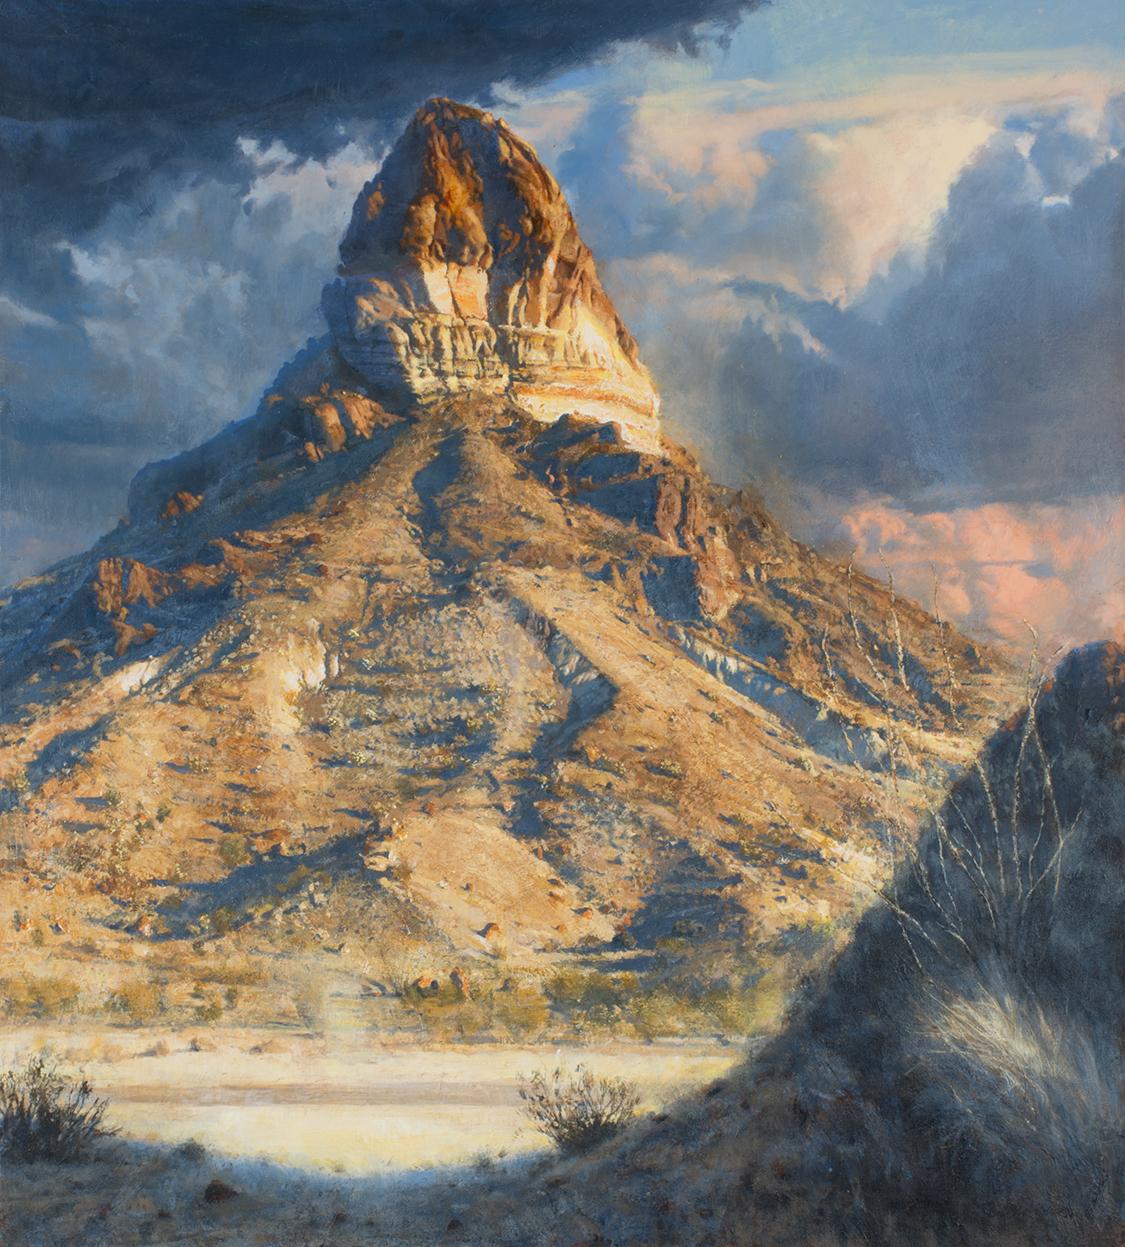 Bob Stuth-Wade Landscape Painting – Cerro Castellan, schmale Ansicht